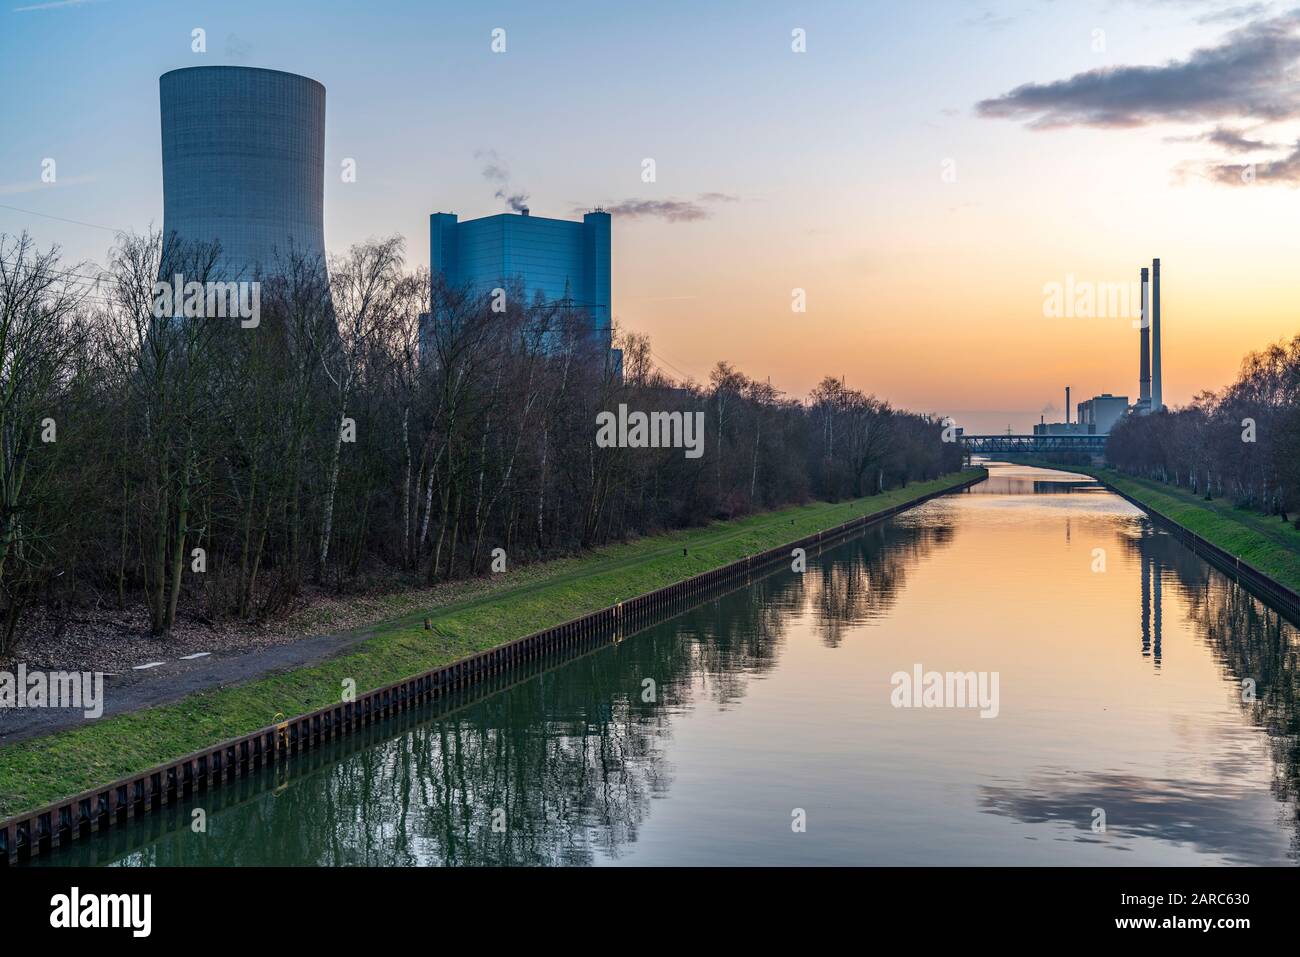 Das Steinkohlekraftwerk Datteln 4, betrieben von Uniper, am Dormtund-Ems-Kanal, es soll, nach dem Kohlekompromiss, im Sommer 2020 ans Netz gehen, rech Foto Stock